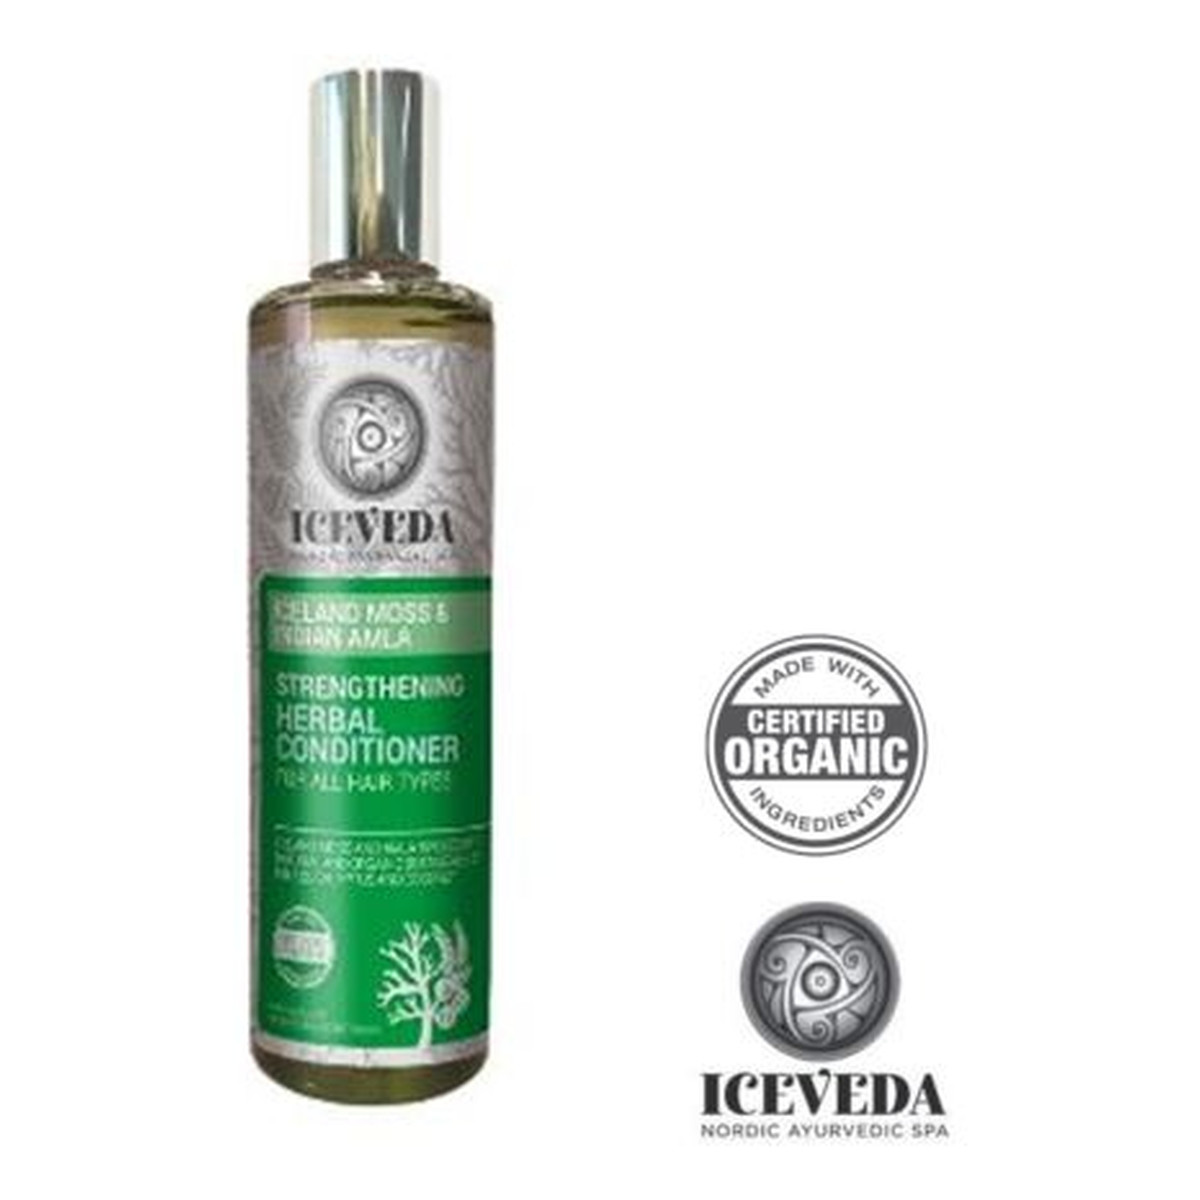 Iceveda Płucnica islandzka & Amla indyjska Wzmacniający balsam ziołowy do wszystkich typów włosów 280ml